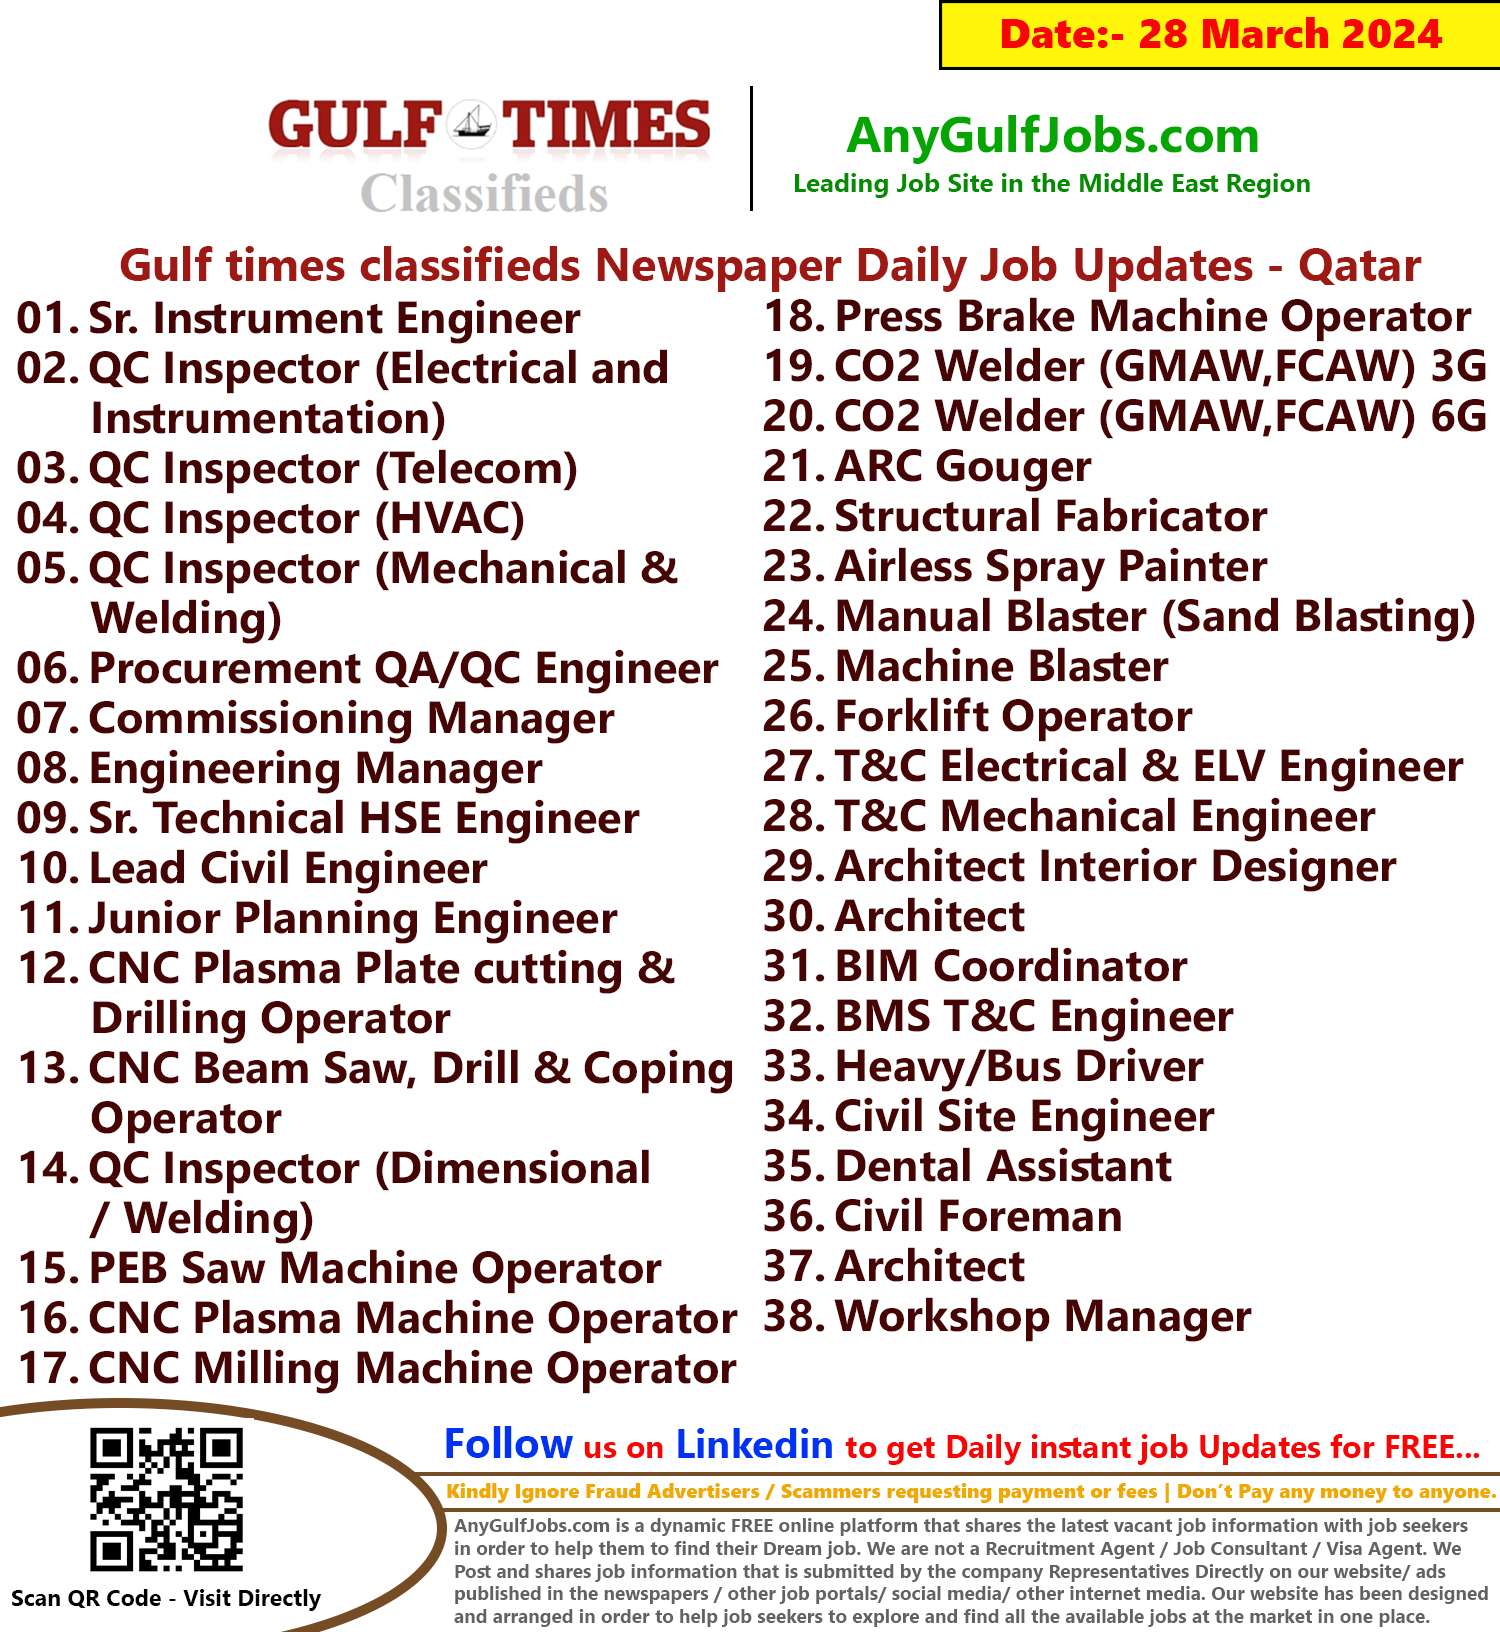 Gulf Times Classifieds Job Vacancies Qatar - 28 March 2024